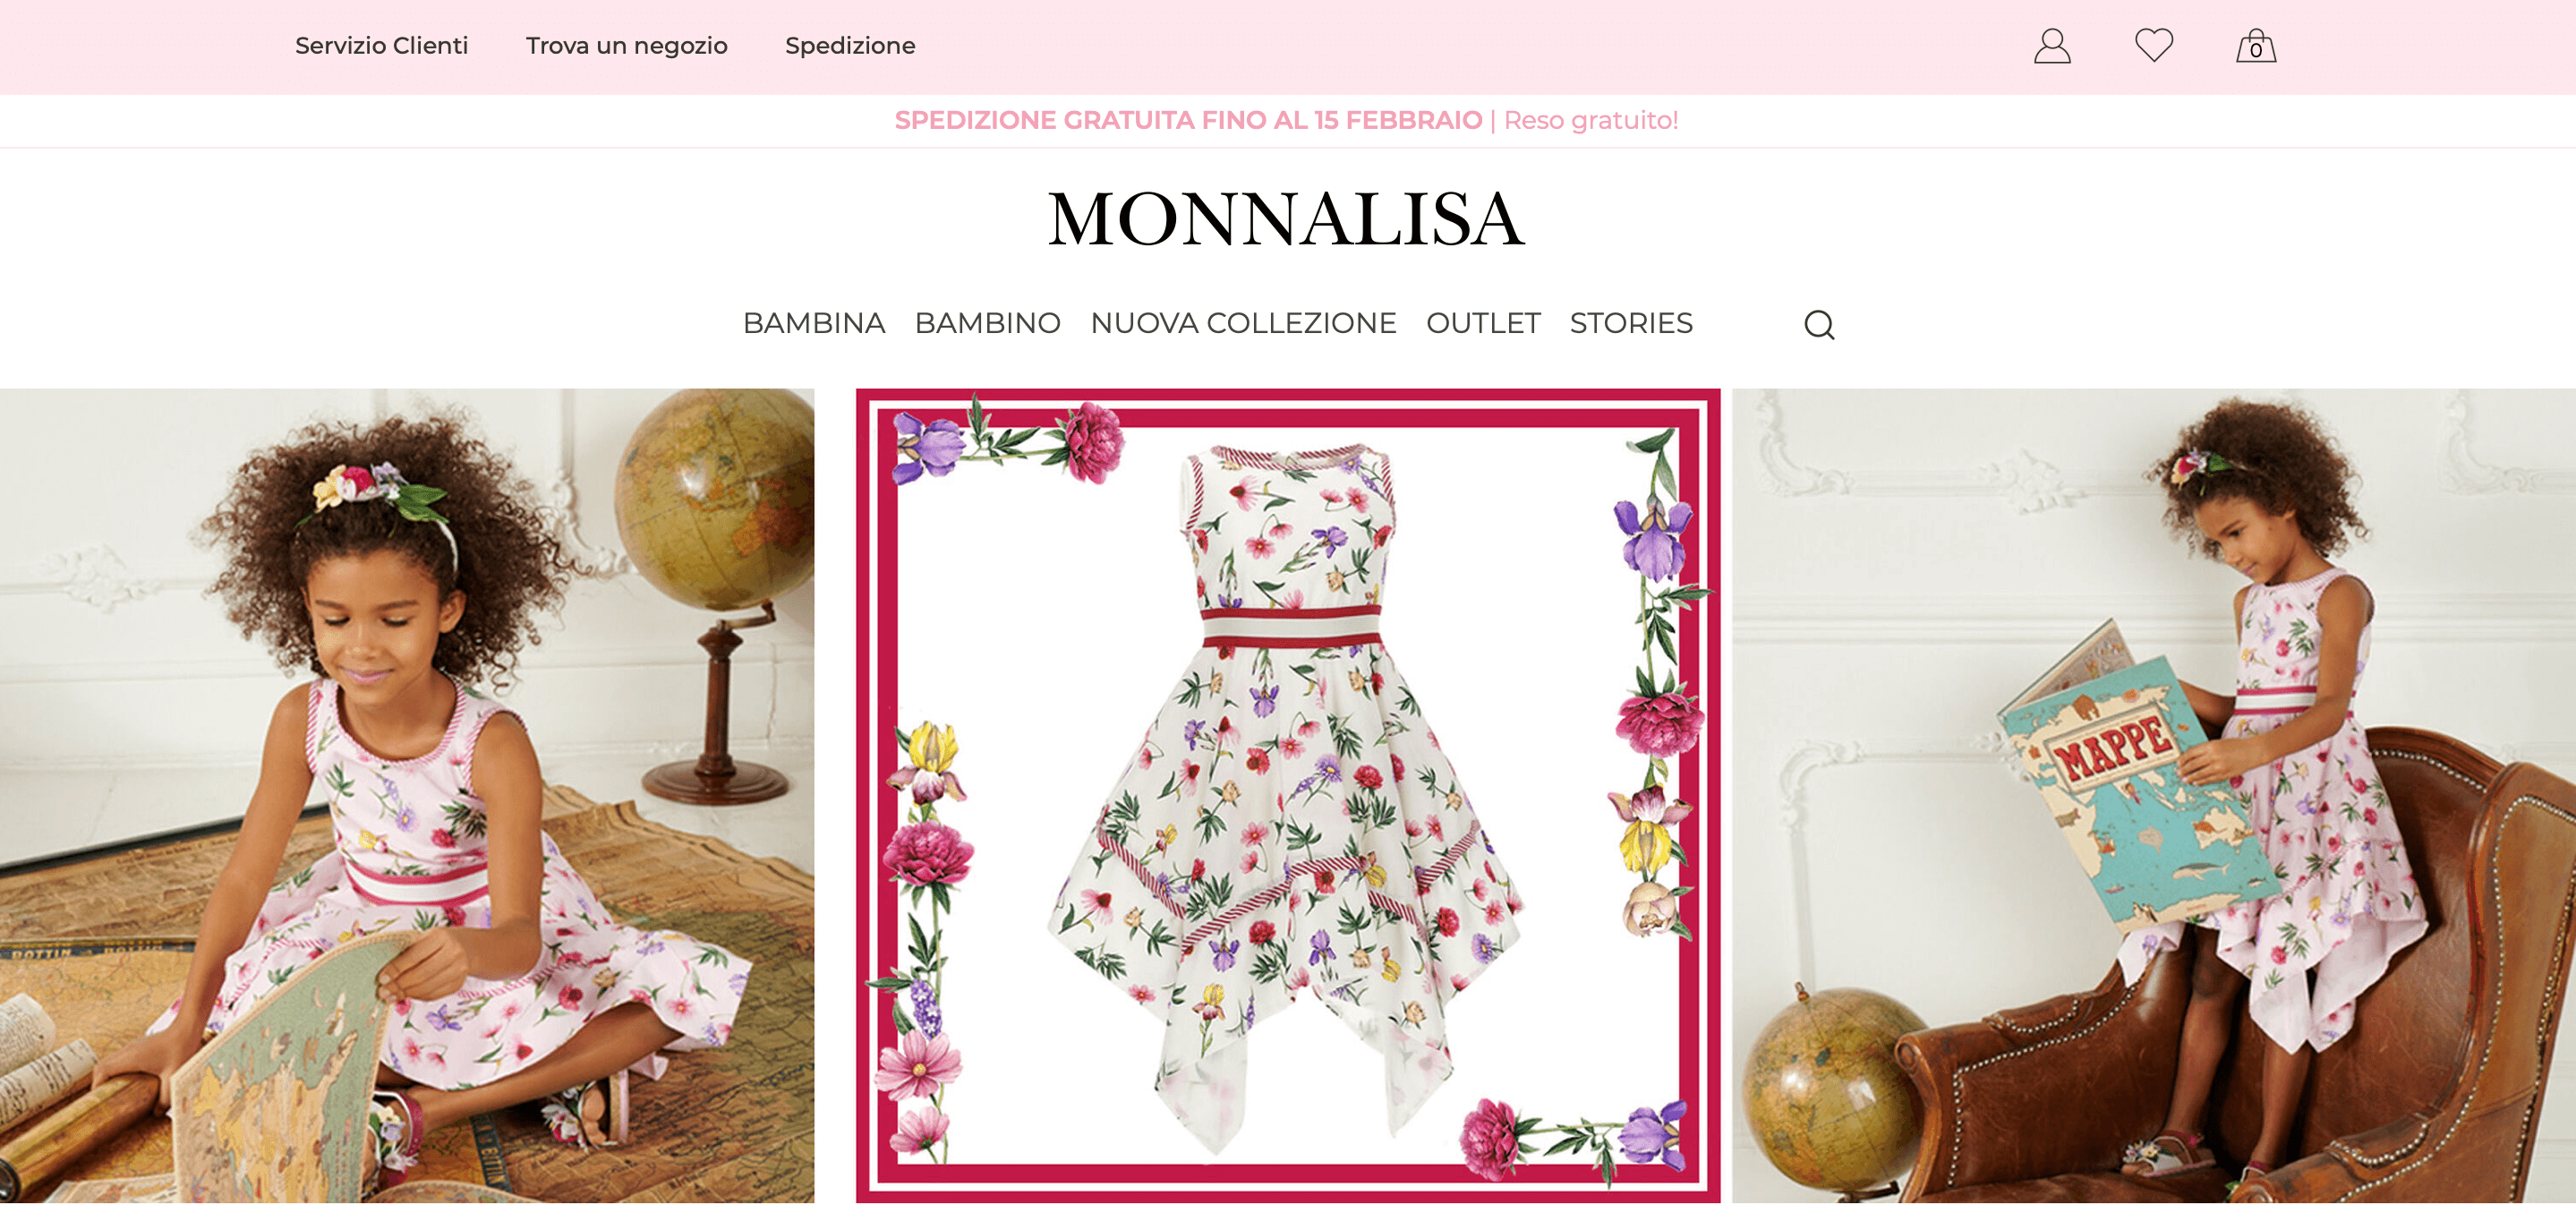 意大利奢侈童装品牌 Monnalisa 第四季度电商业务大涨，转化率提高105%